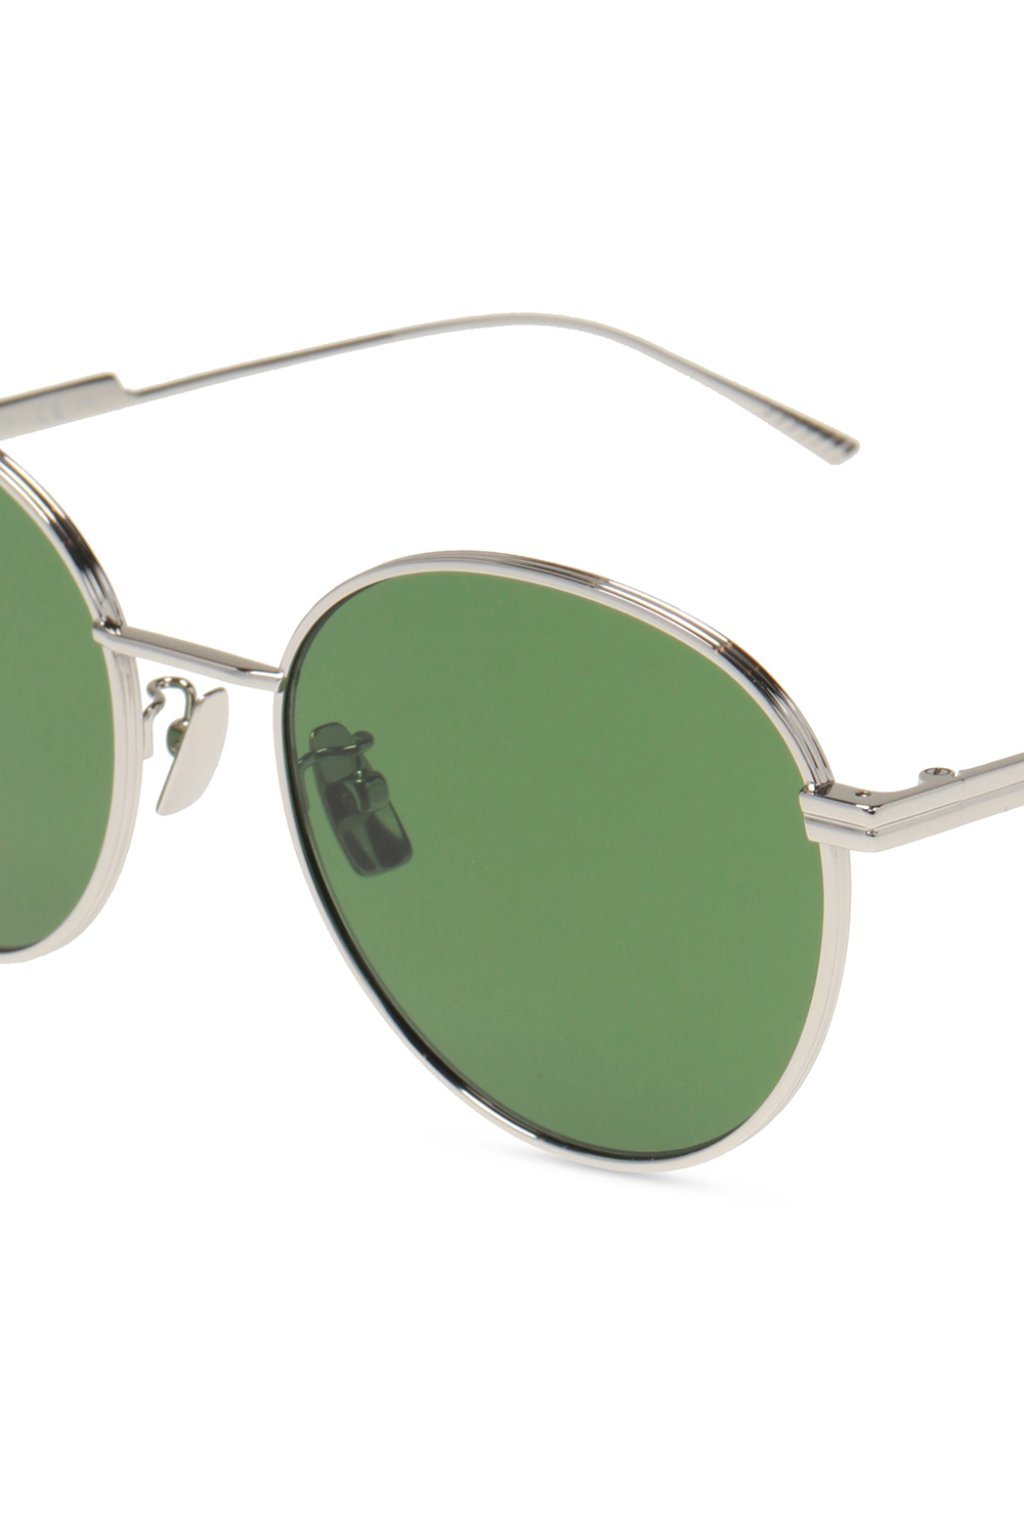 Bottega Veneta Green Geometric Sunglasses BV0201S 004 60